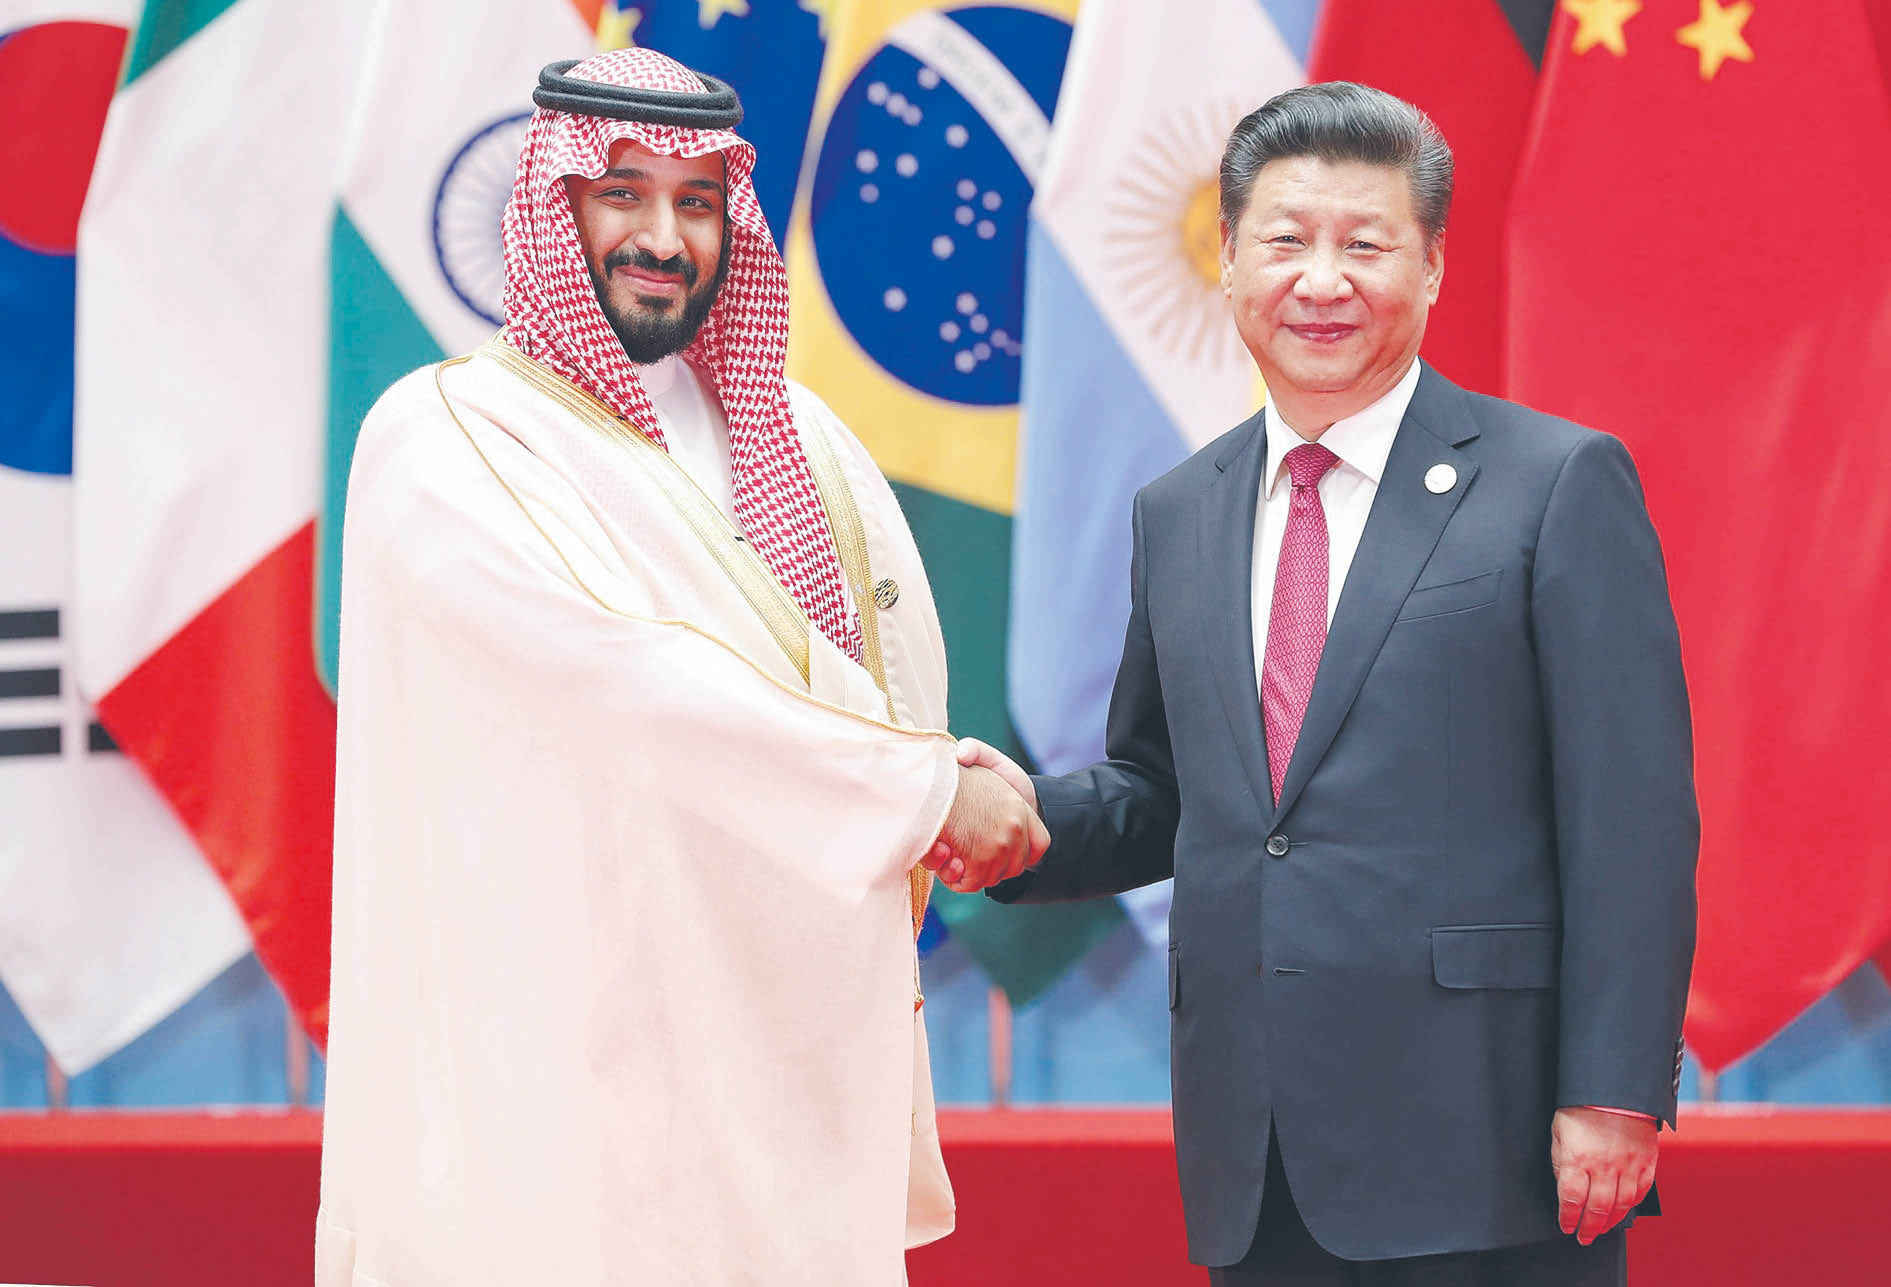 Przywódca Chin Xi Jinping spotkał się z Muhammadem ibn Salmanem w 2016 r. w Hangzhou. Książę był wtedy saudyjskim ministrem obrony